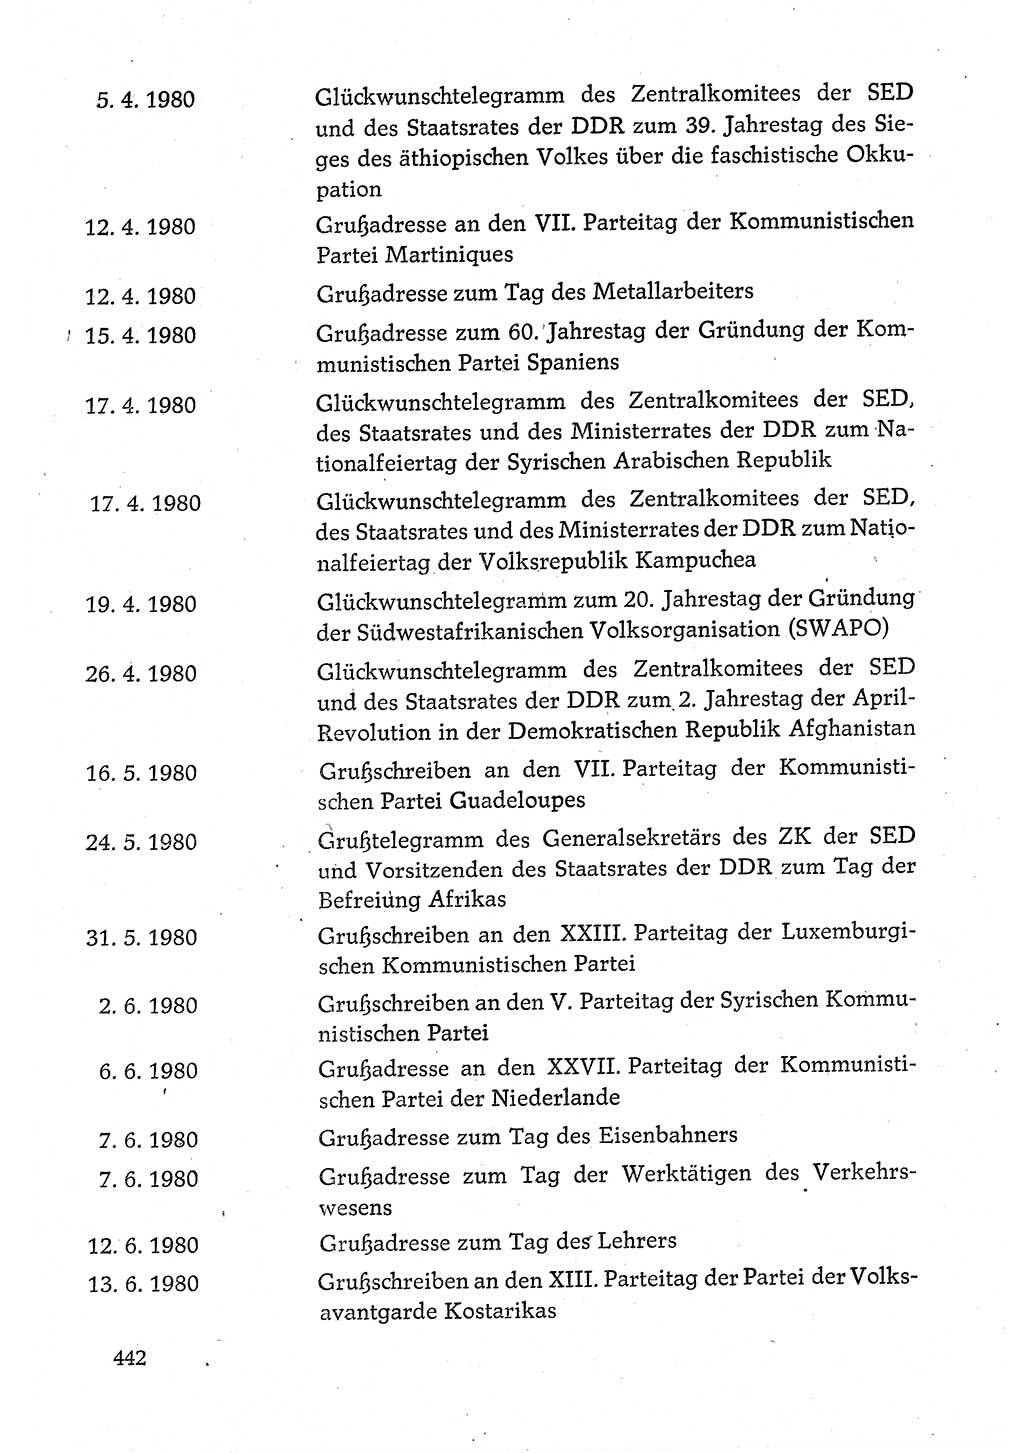 Dokumente der Sozialistischen Einheitspartei Deutschlands (SED) [Deutsche Demokratische Republik (DDR)] 1980-1981, Seite 442 (Dok. SED DDR 1980-1981, S. 442)